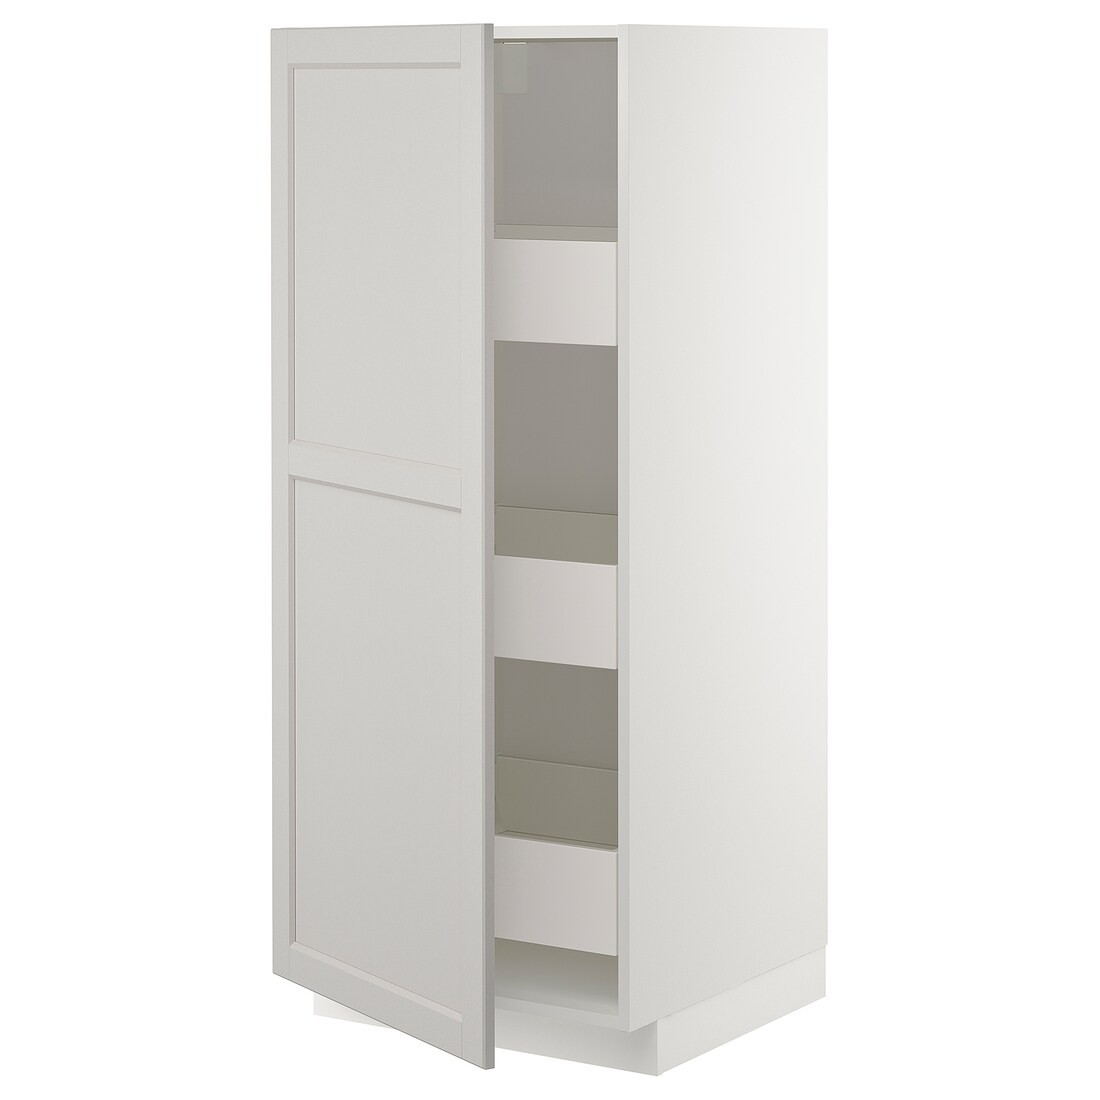 IKEA METOD МЕТОД / MAXIMERA МАКСИМЕРА Шкаф высокий с ящиками, белый / Lerhyttan светло-серый, 60x60x140 см 19386790 | 193.867.90